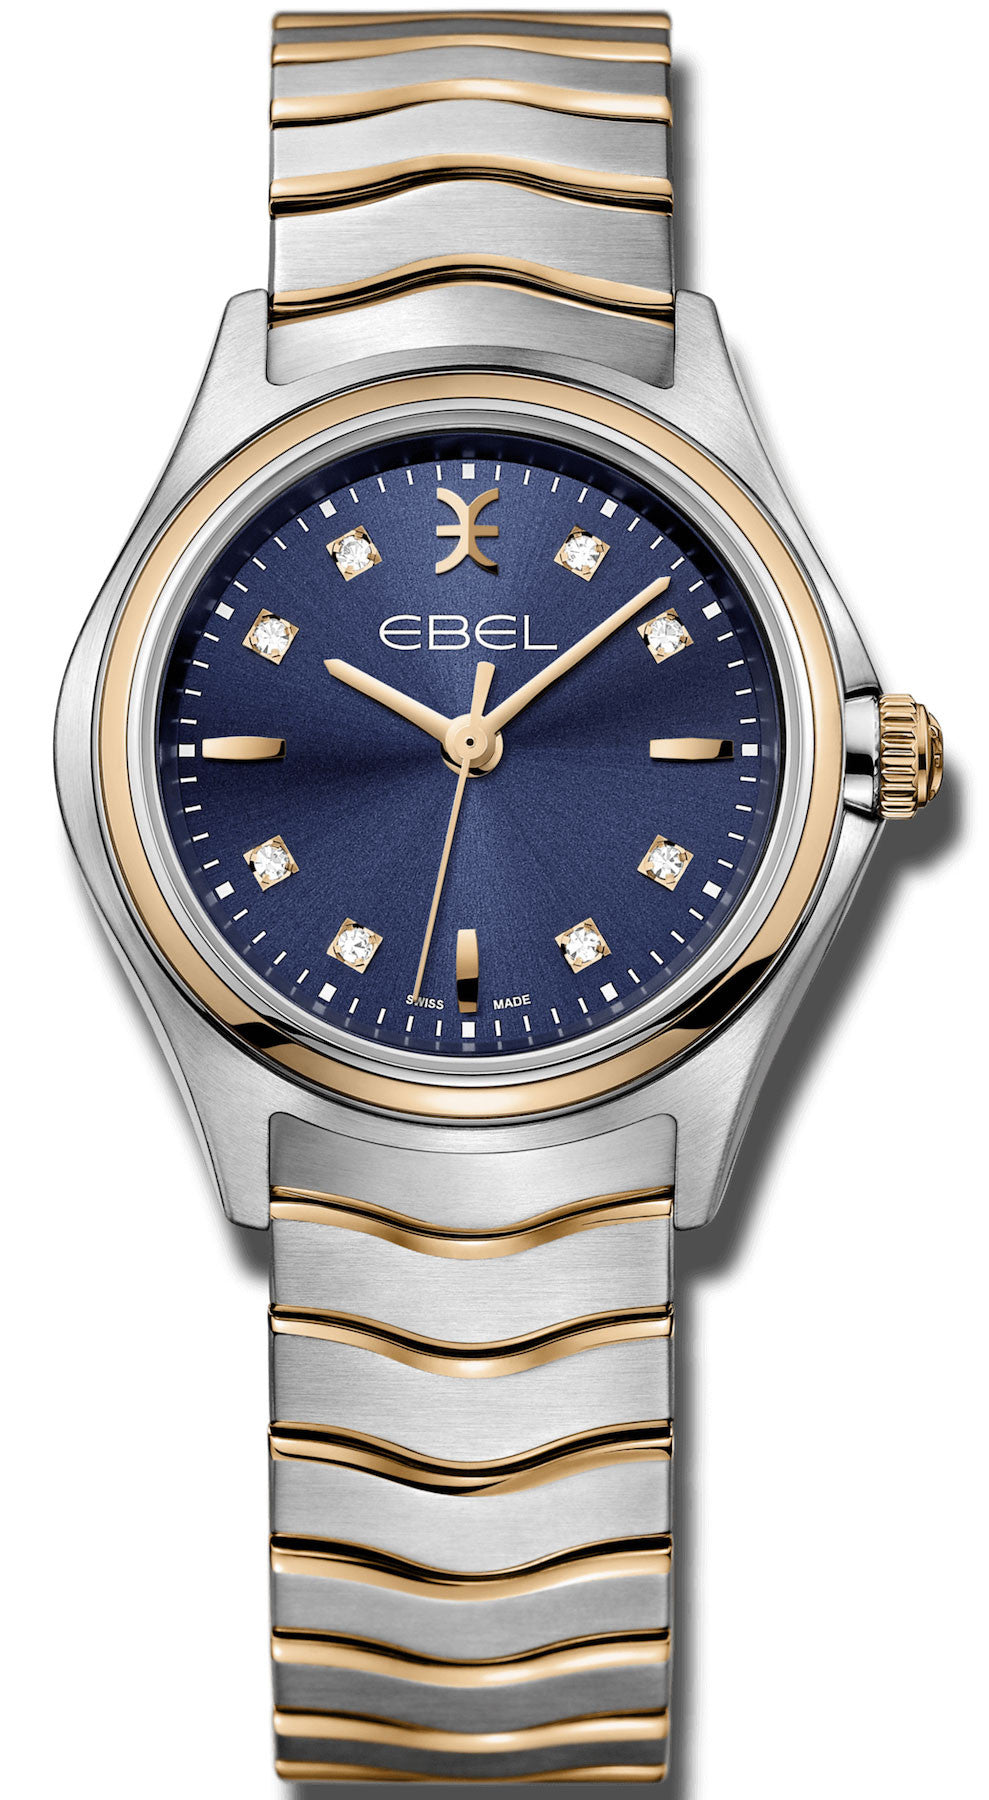 Photos - Wrist Watch Ebel Watch Wave Ladies D EBL-215 